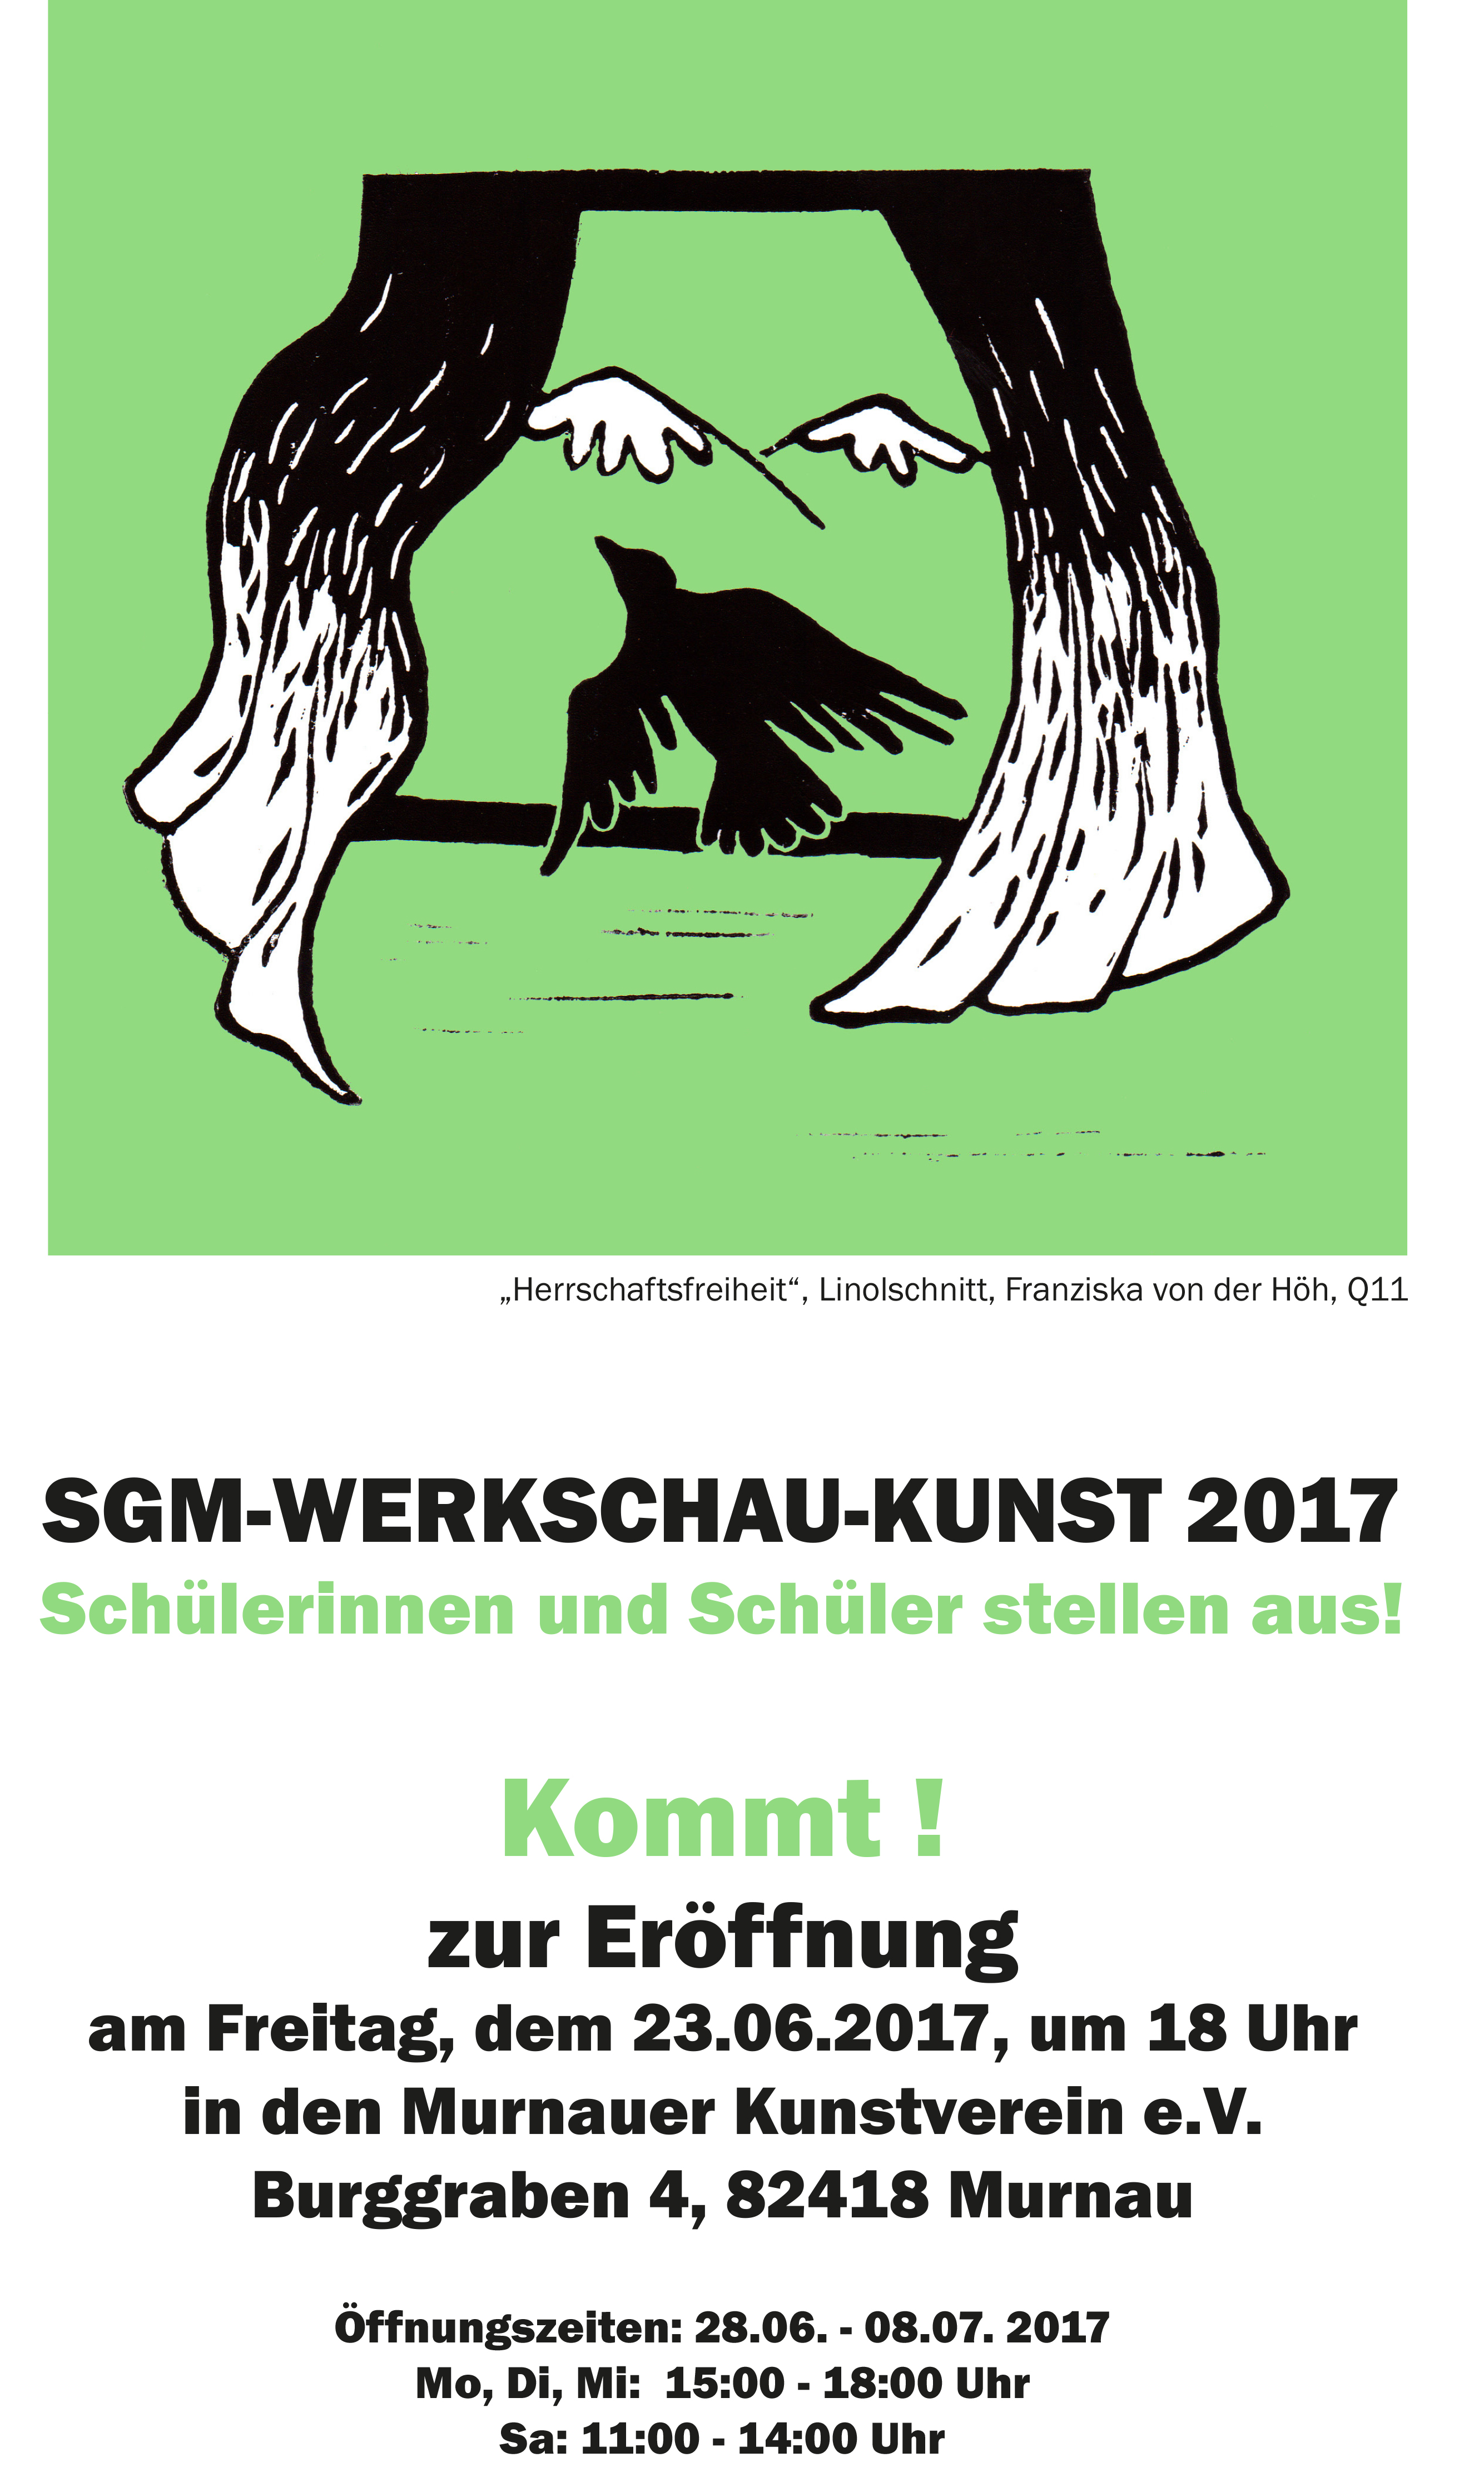 SGM-Werkschau-Kunst 2017.jpg